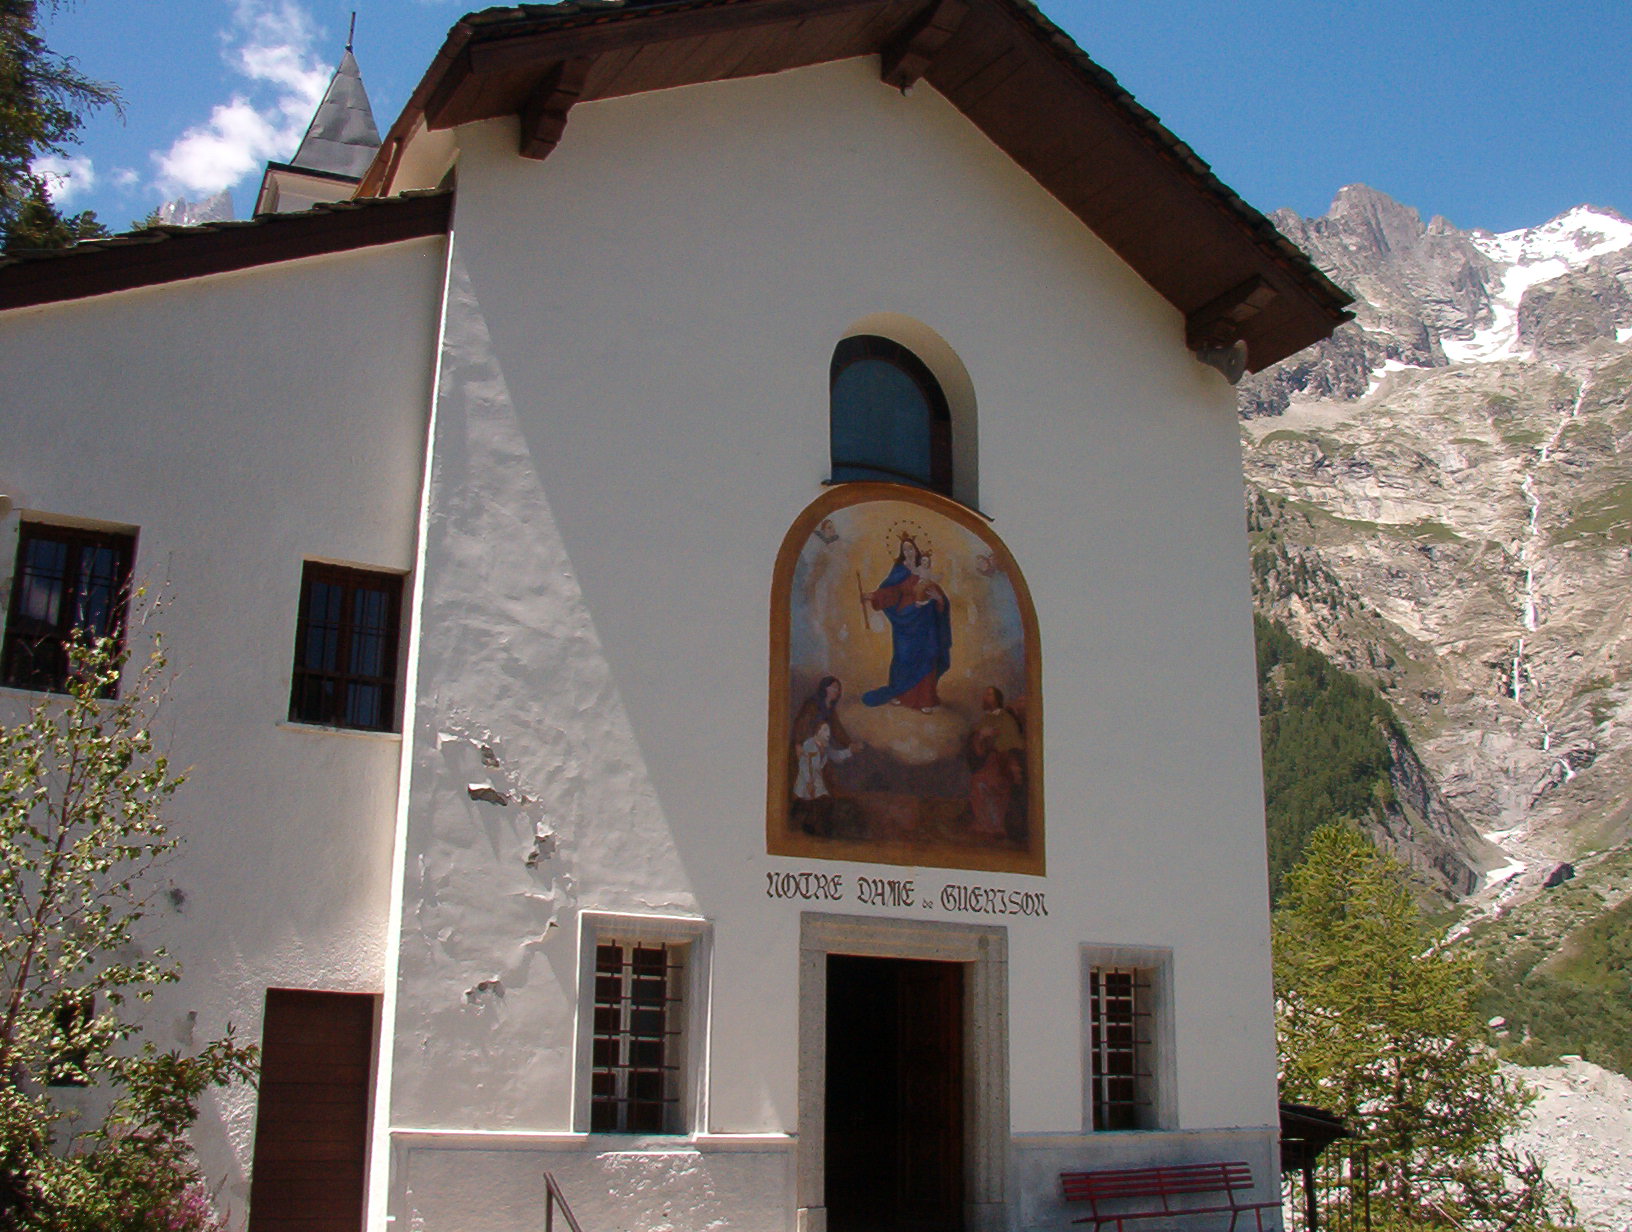 Notre-Dame de la Guerison, Sacro Monte in Valle d'Aosta